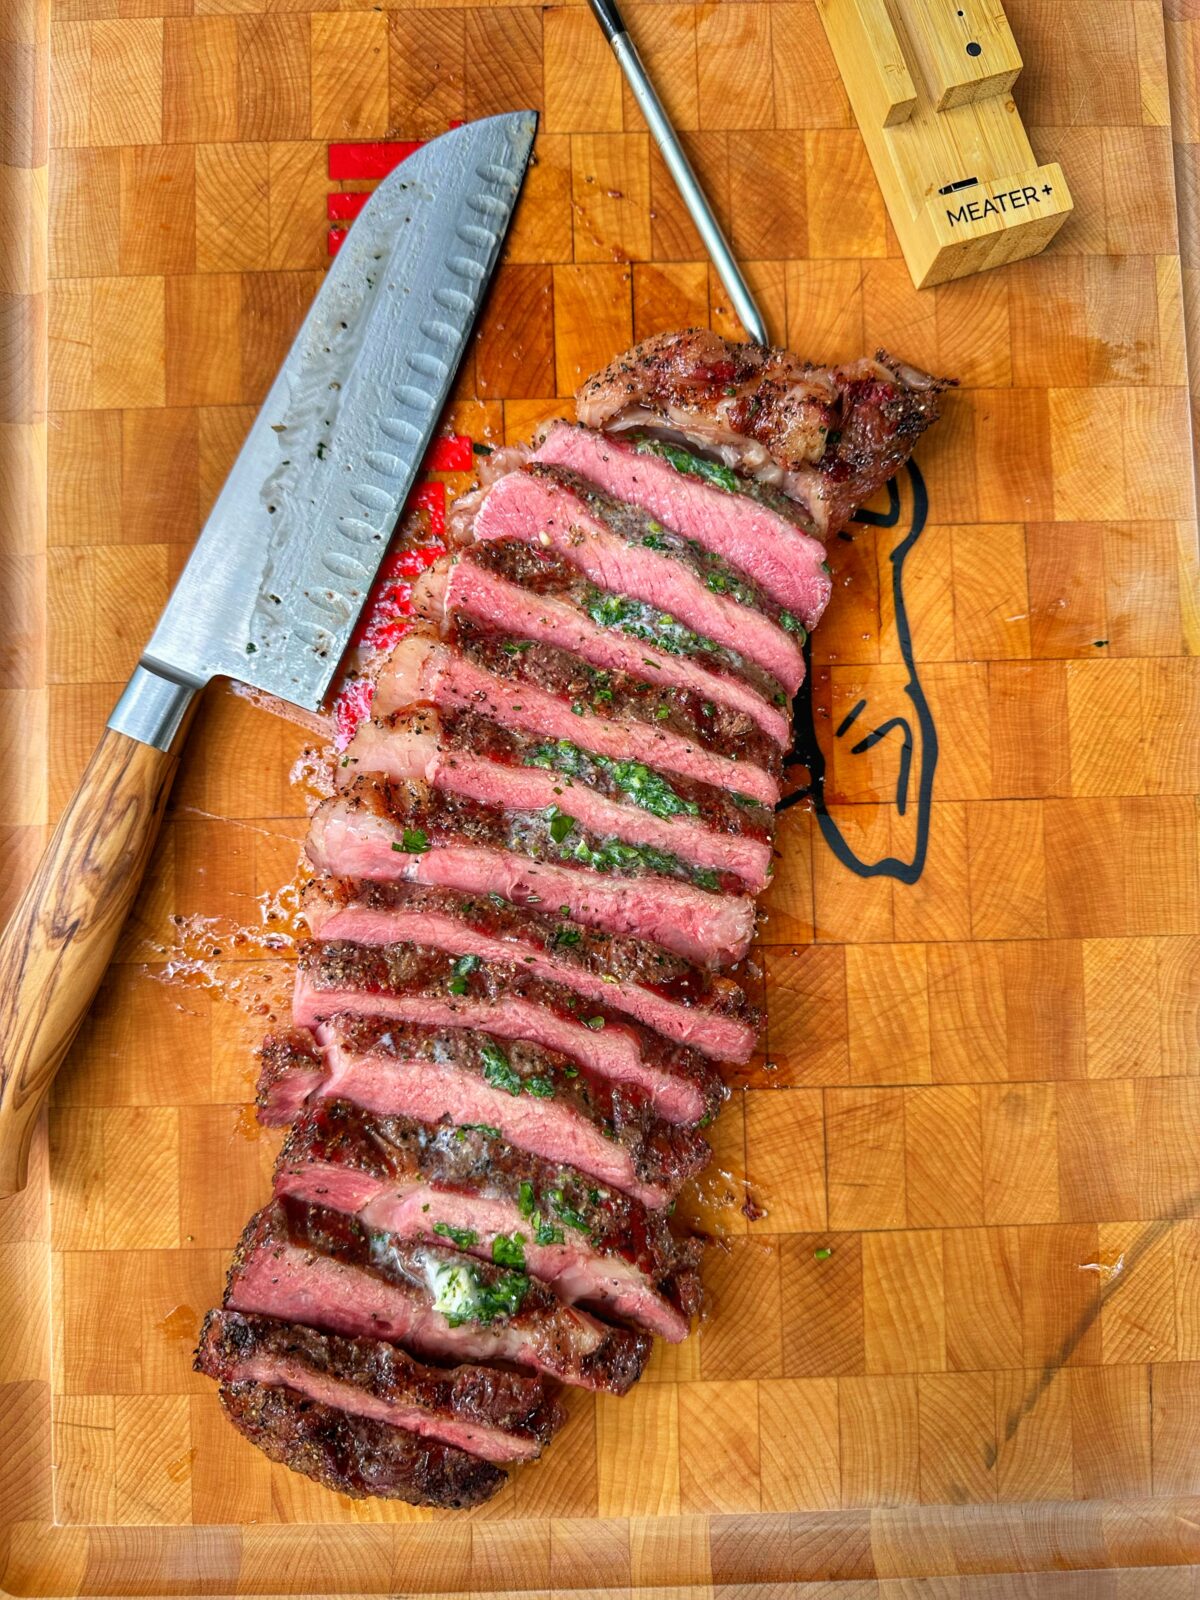 Sliced ribeye steak and a knife on a cutting board.